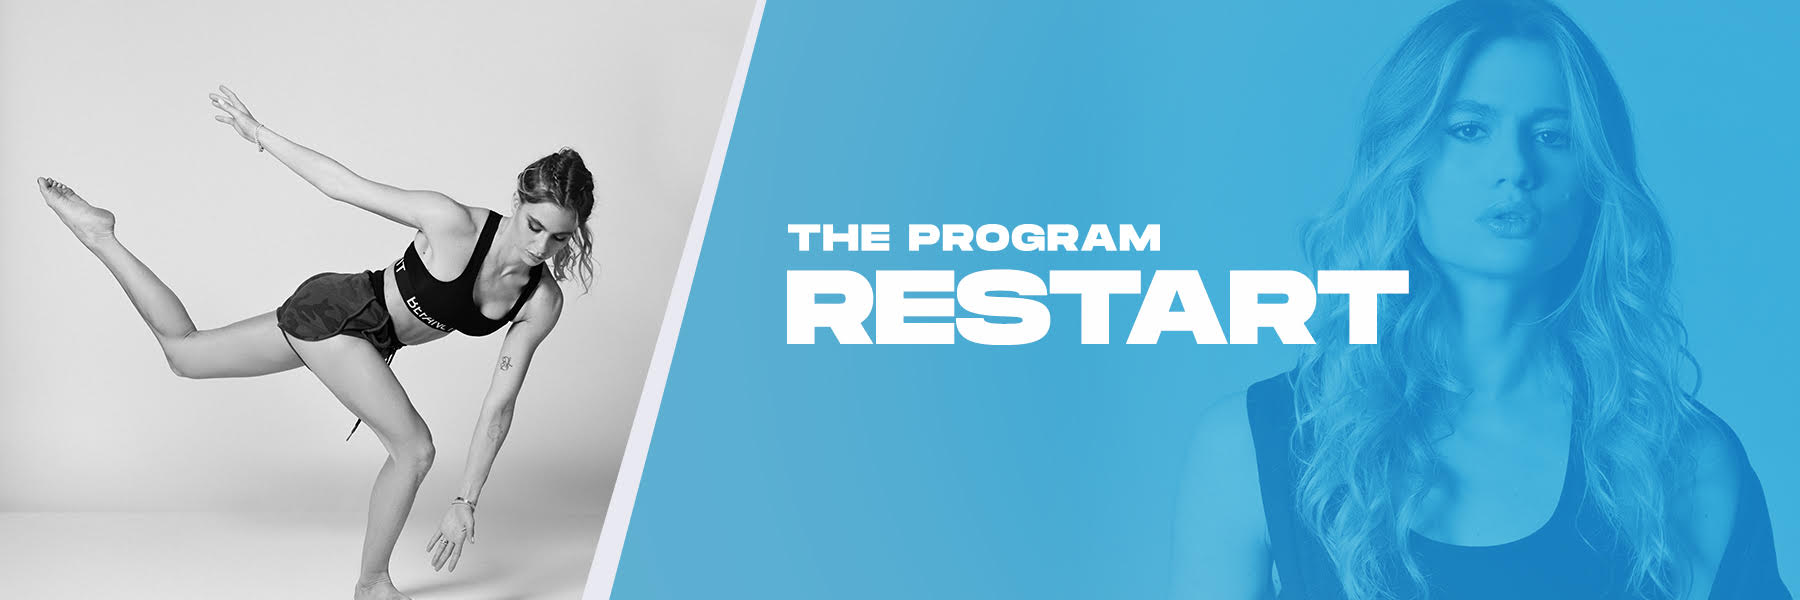 the program restart